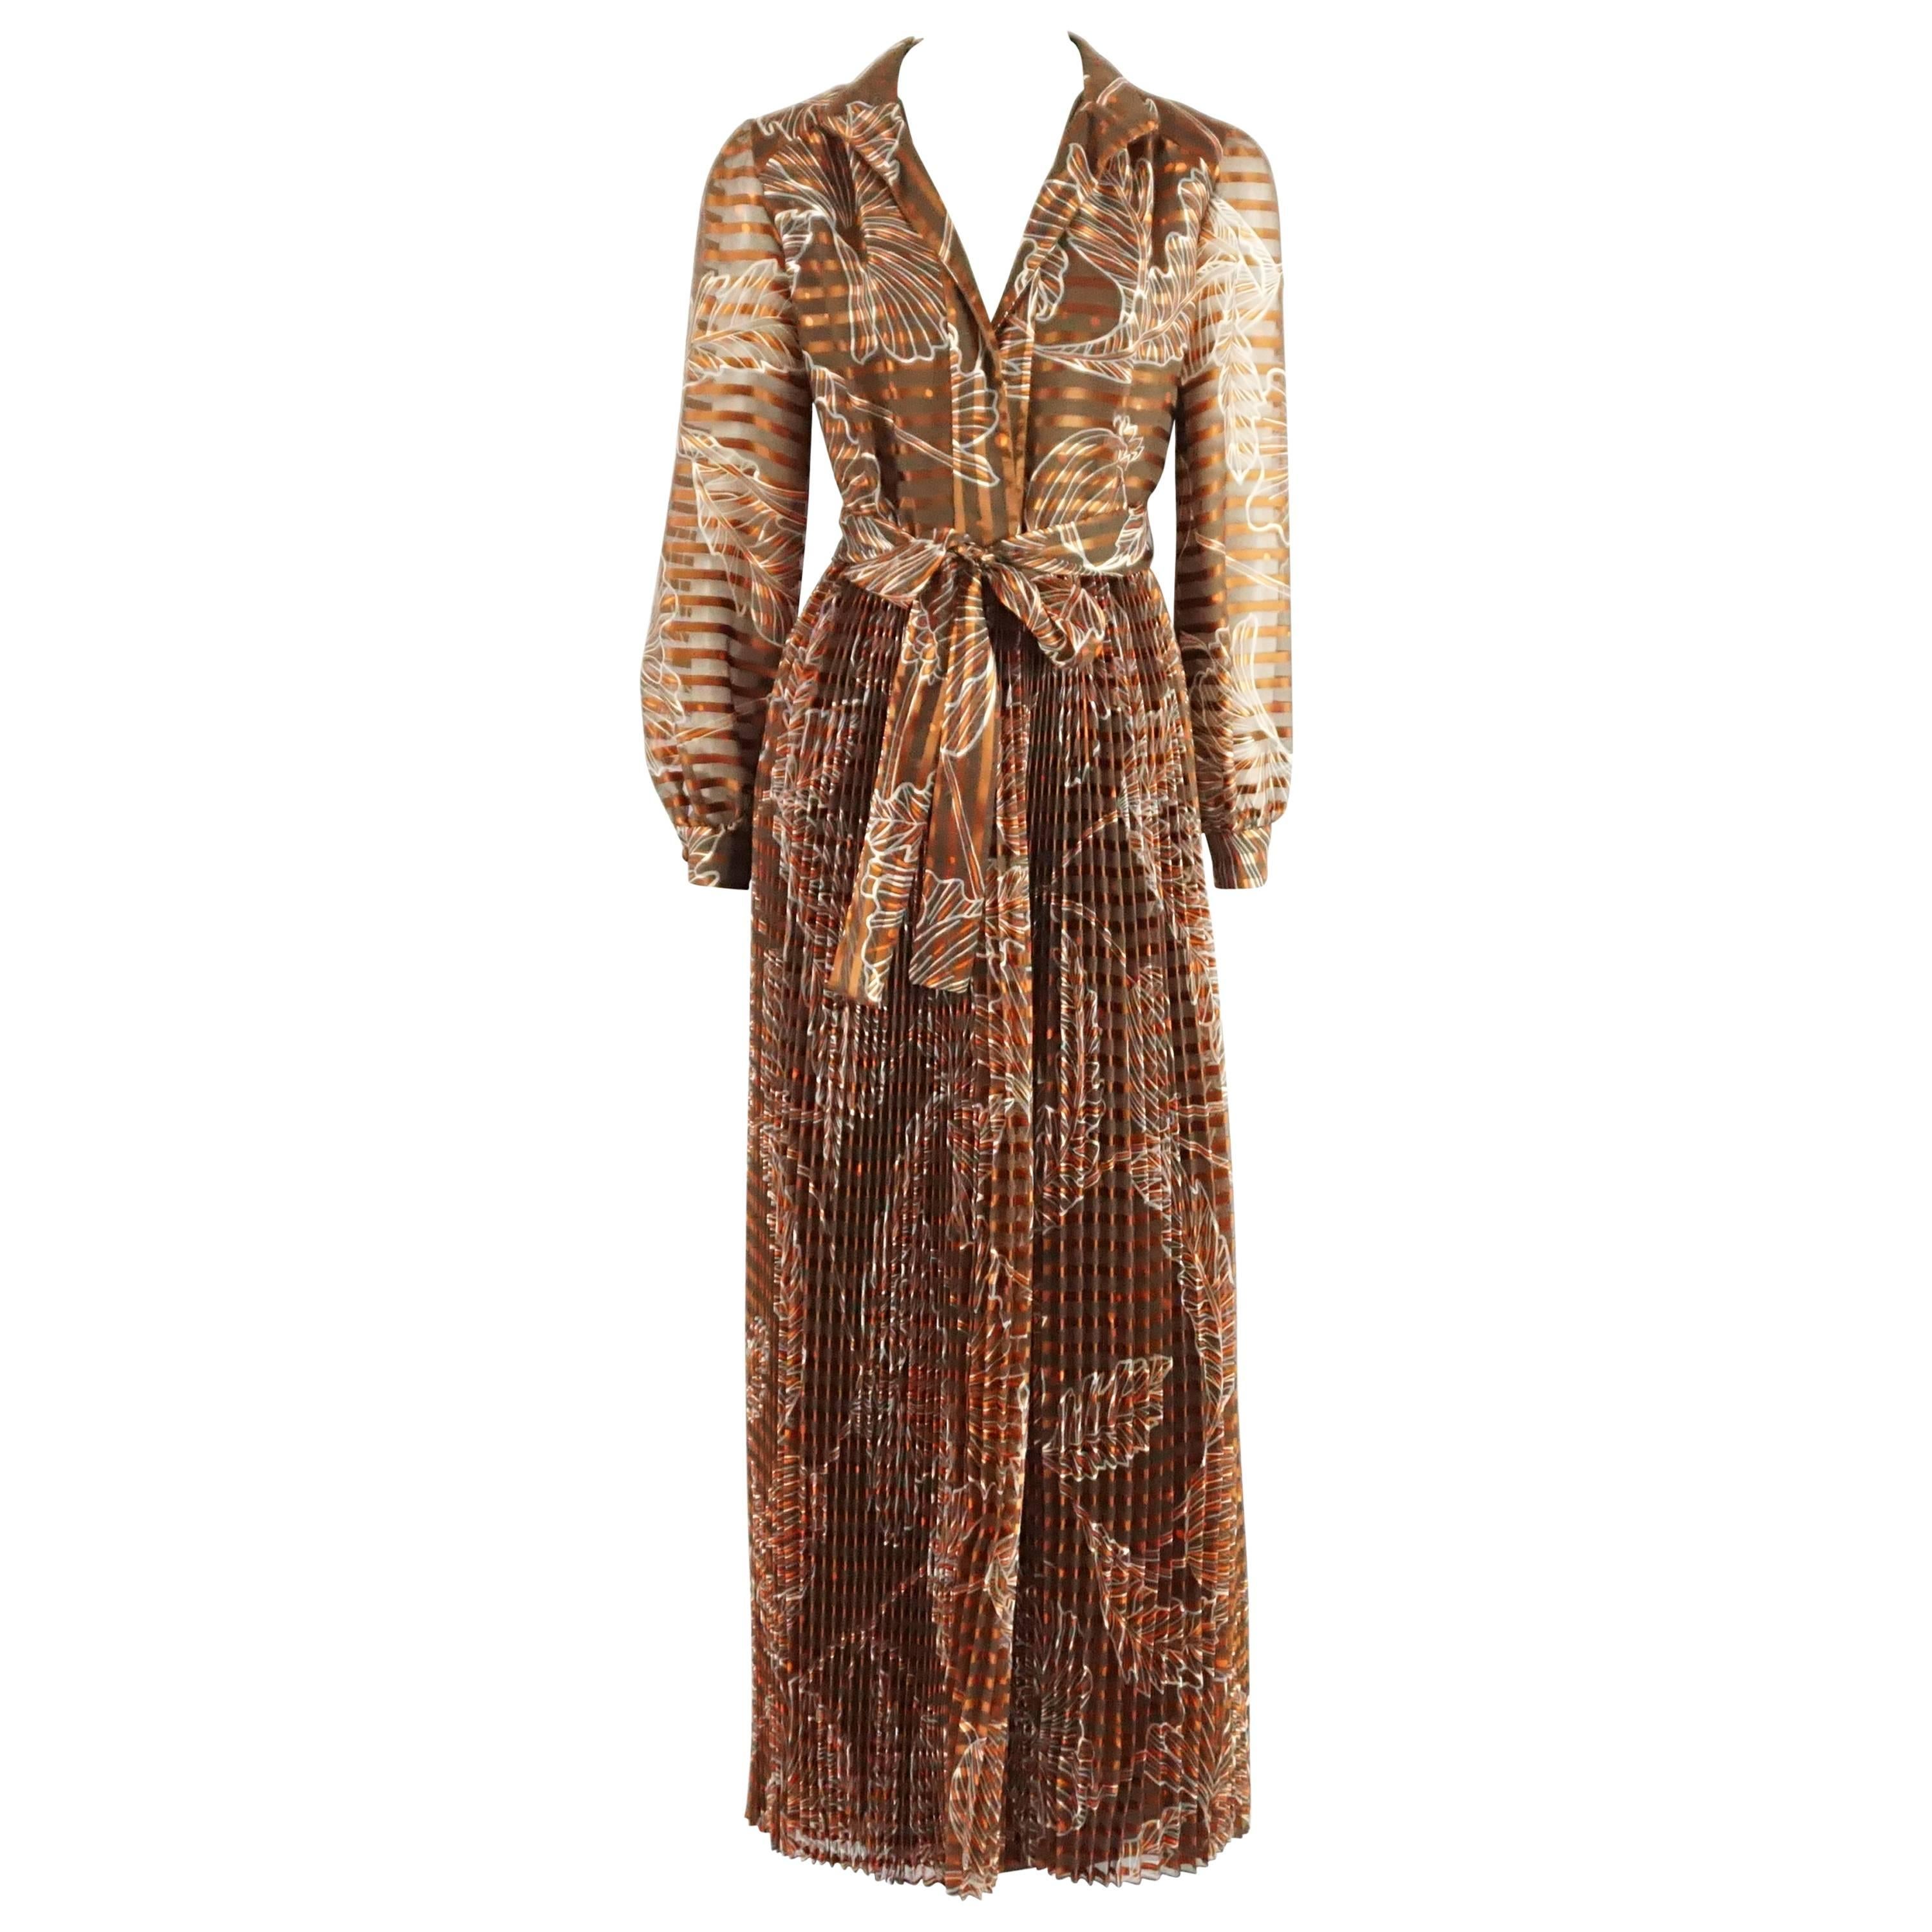 Oscar de la Renta Rust Print Silk Organza Gown - 6 - Circa 60's For Sale